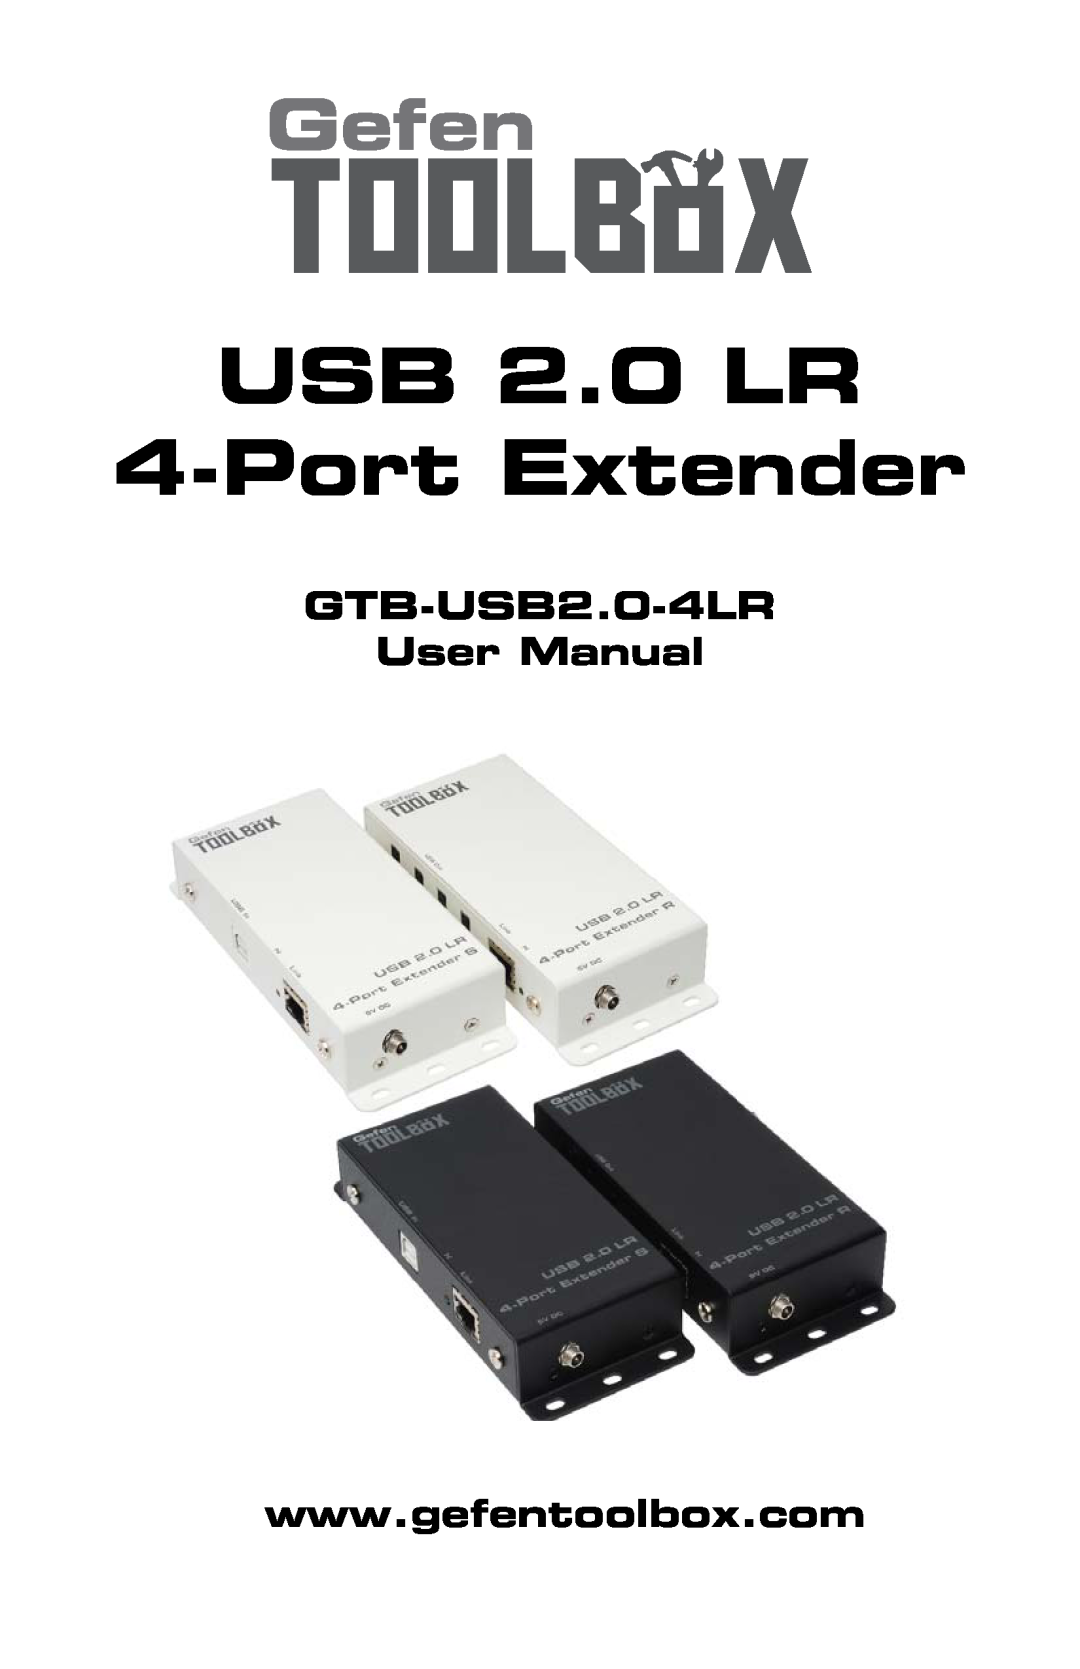 Gefen user manual USB 2.0 LR 4-Port Extender, GTB-USB2.0-4LR User Manual 